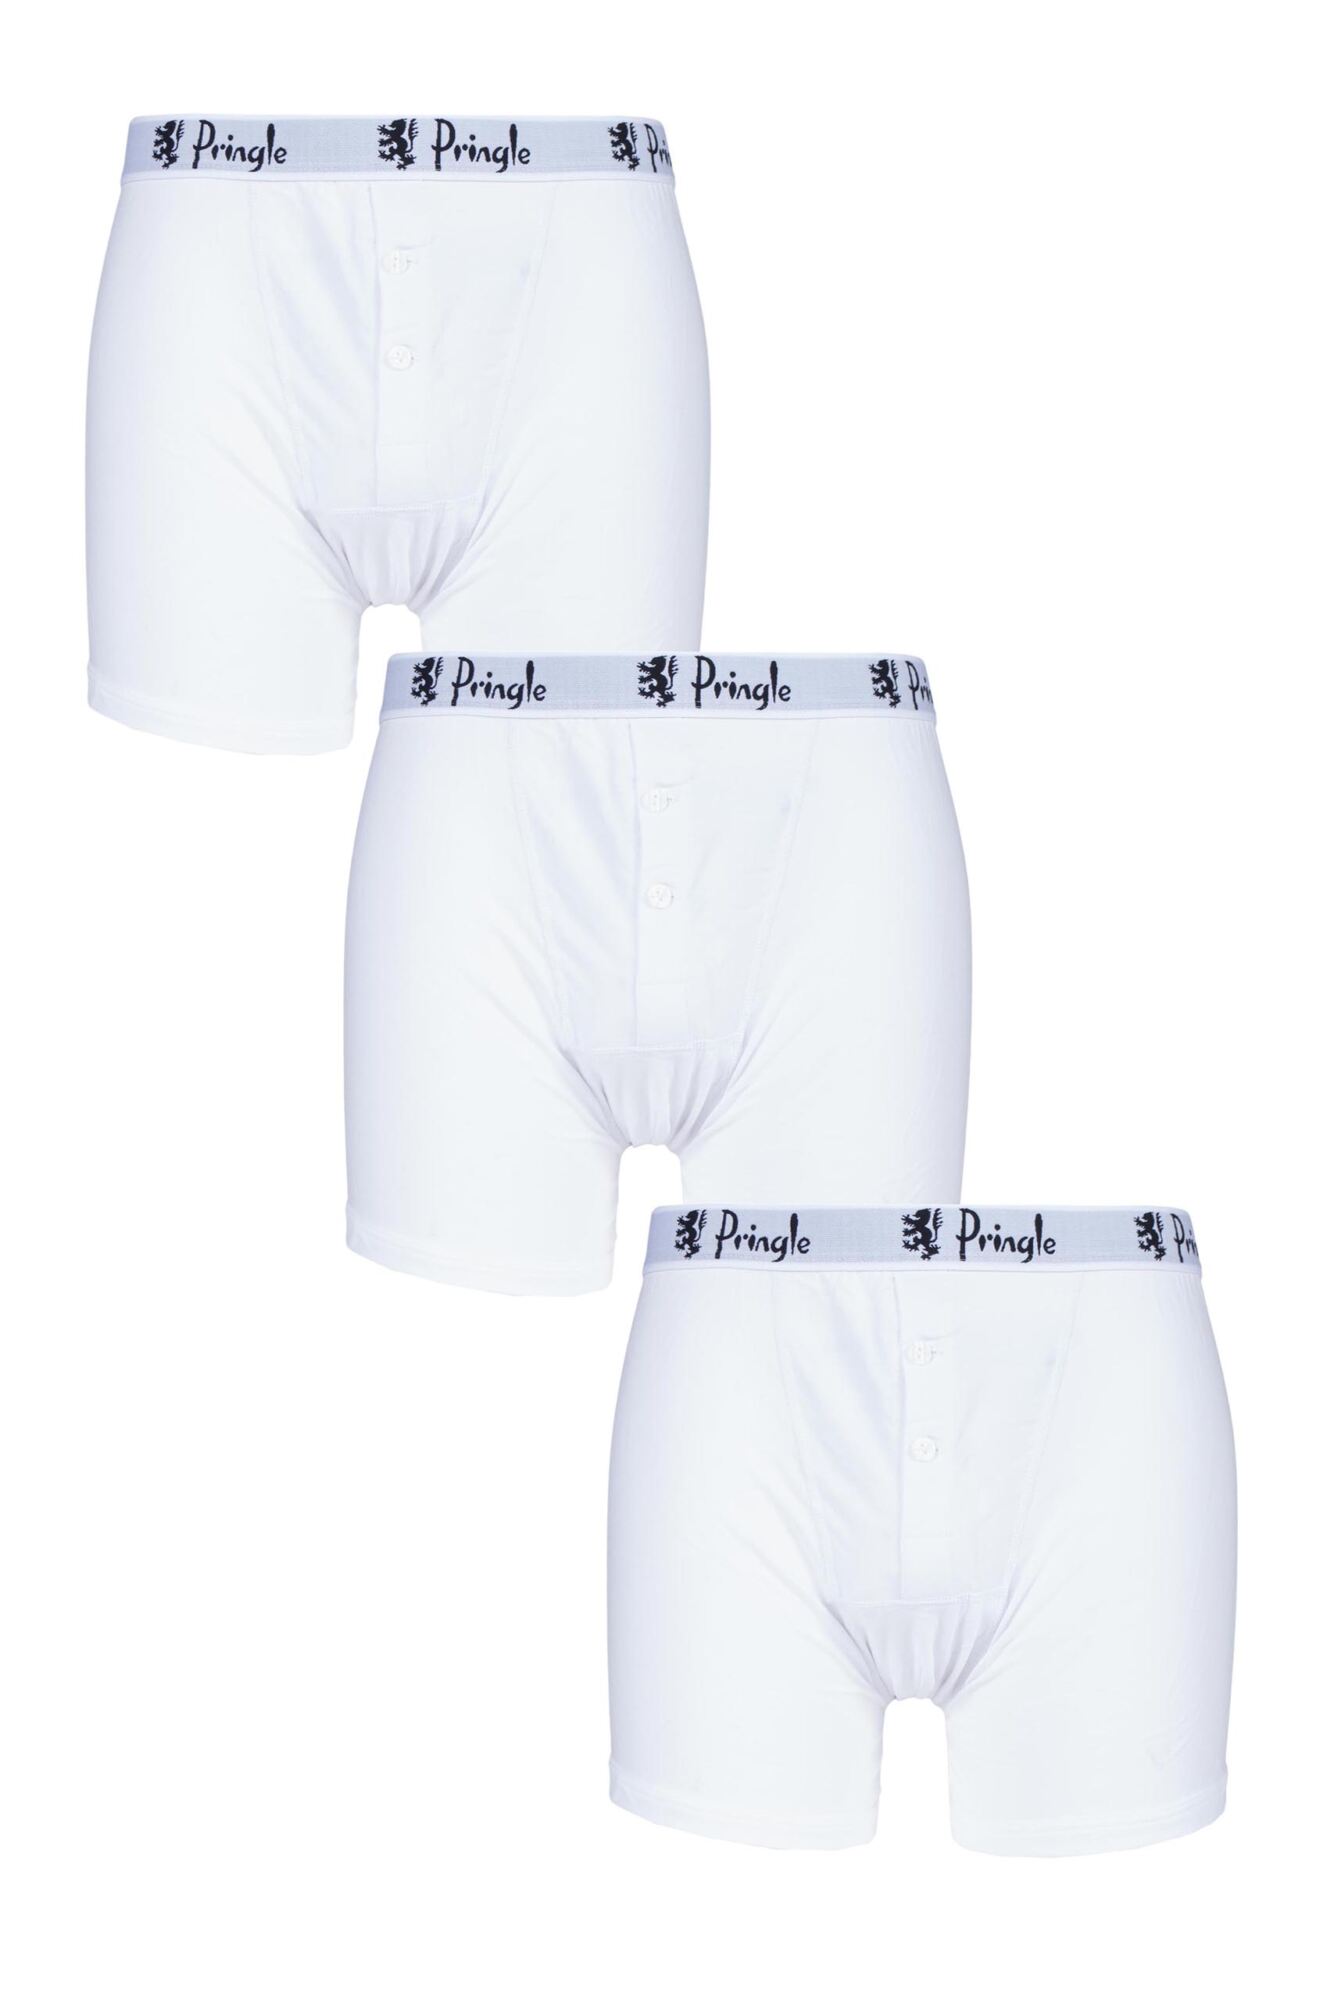 Pringle Button Front Cotton Boxer Shorts | SOCKSHOP